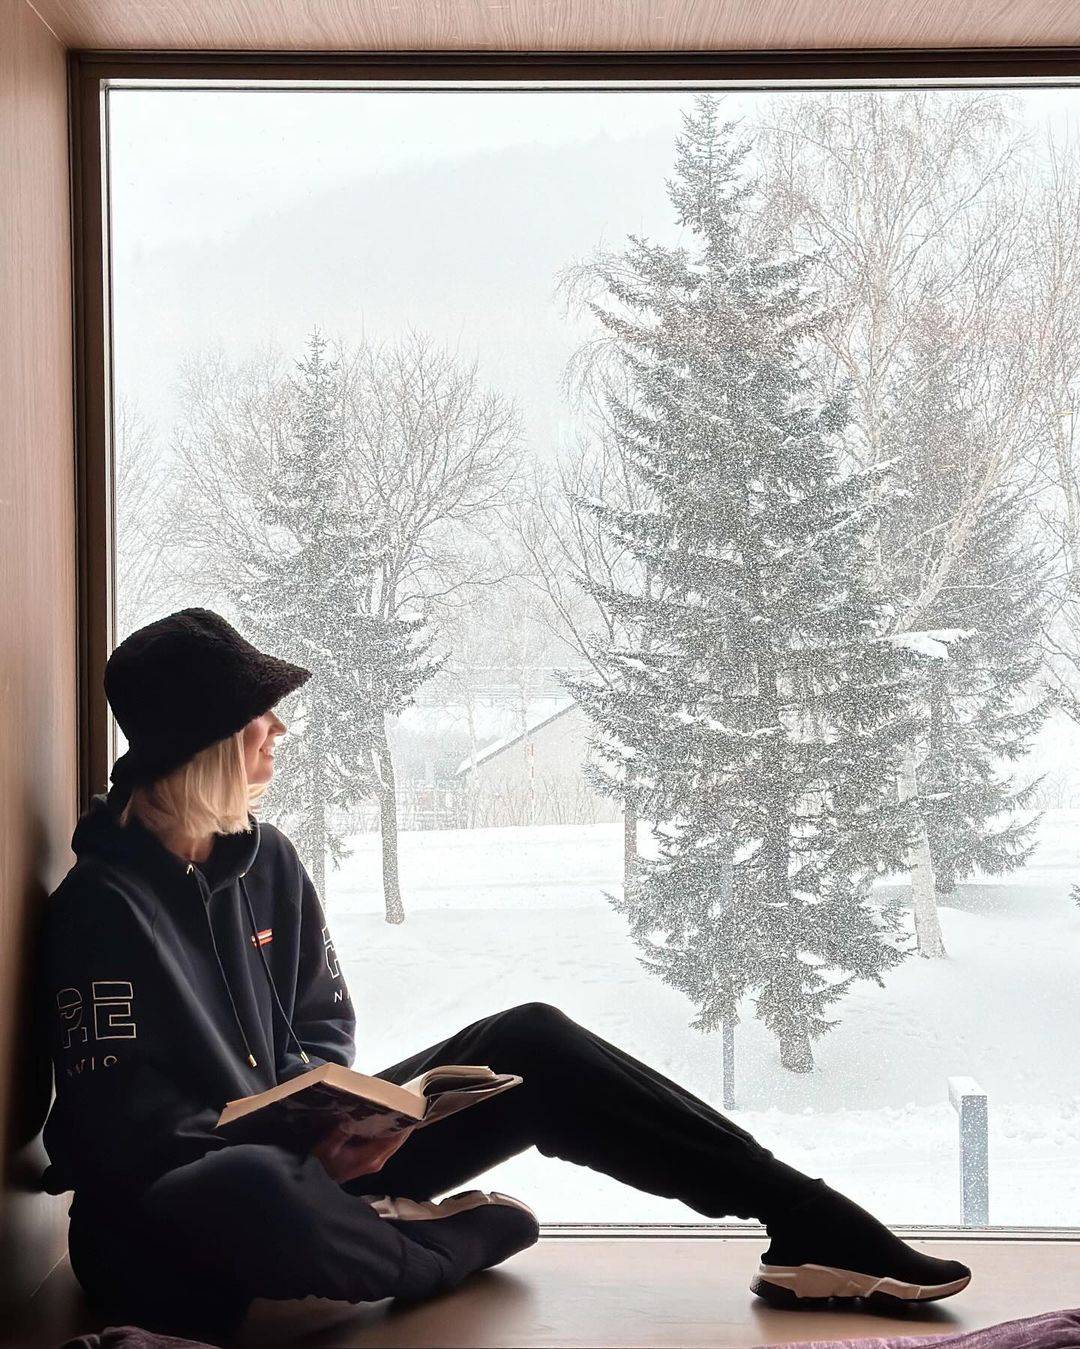 Girl sitting net to a window, it is snowing outside